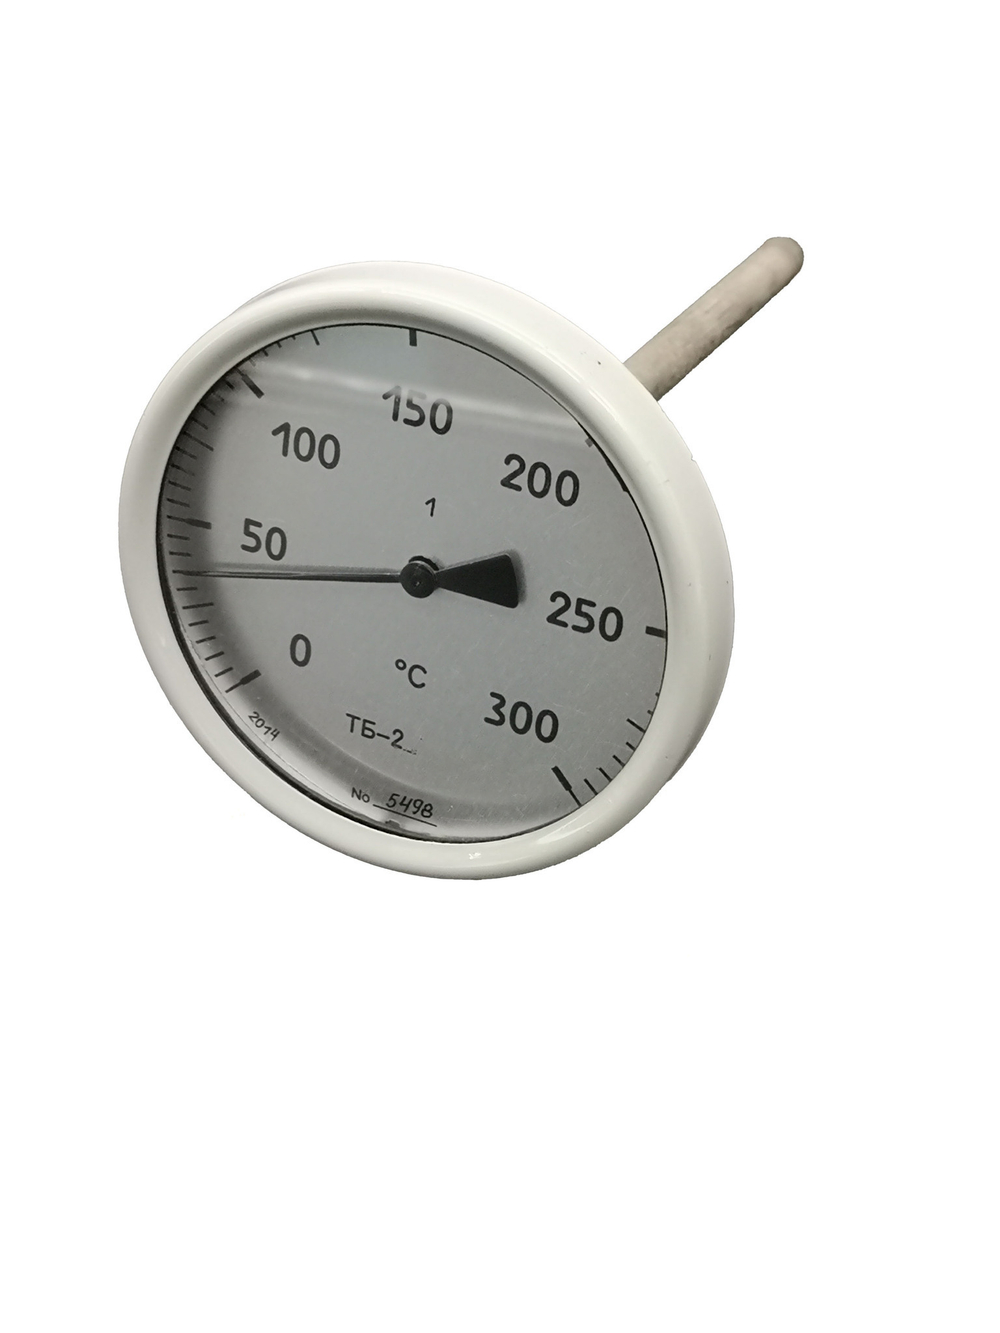 Термометр биметаллический  ТБ-2 (0+300),160мм, 1%, G1/2, осевой, показывающий